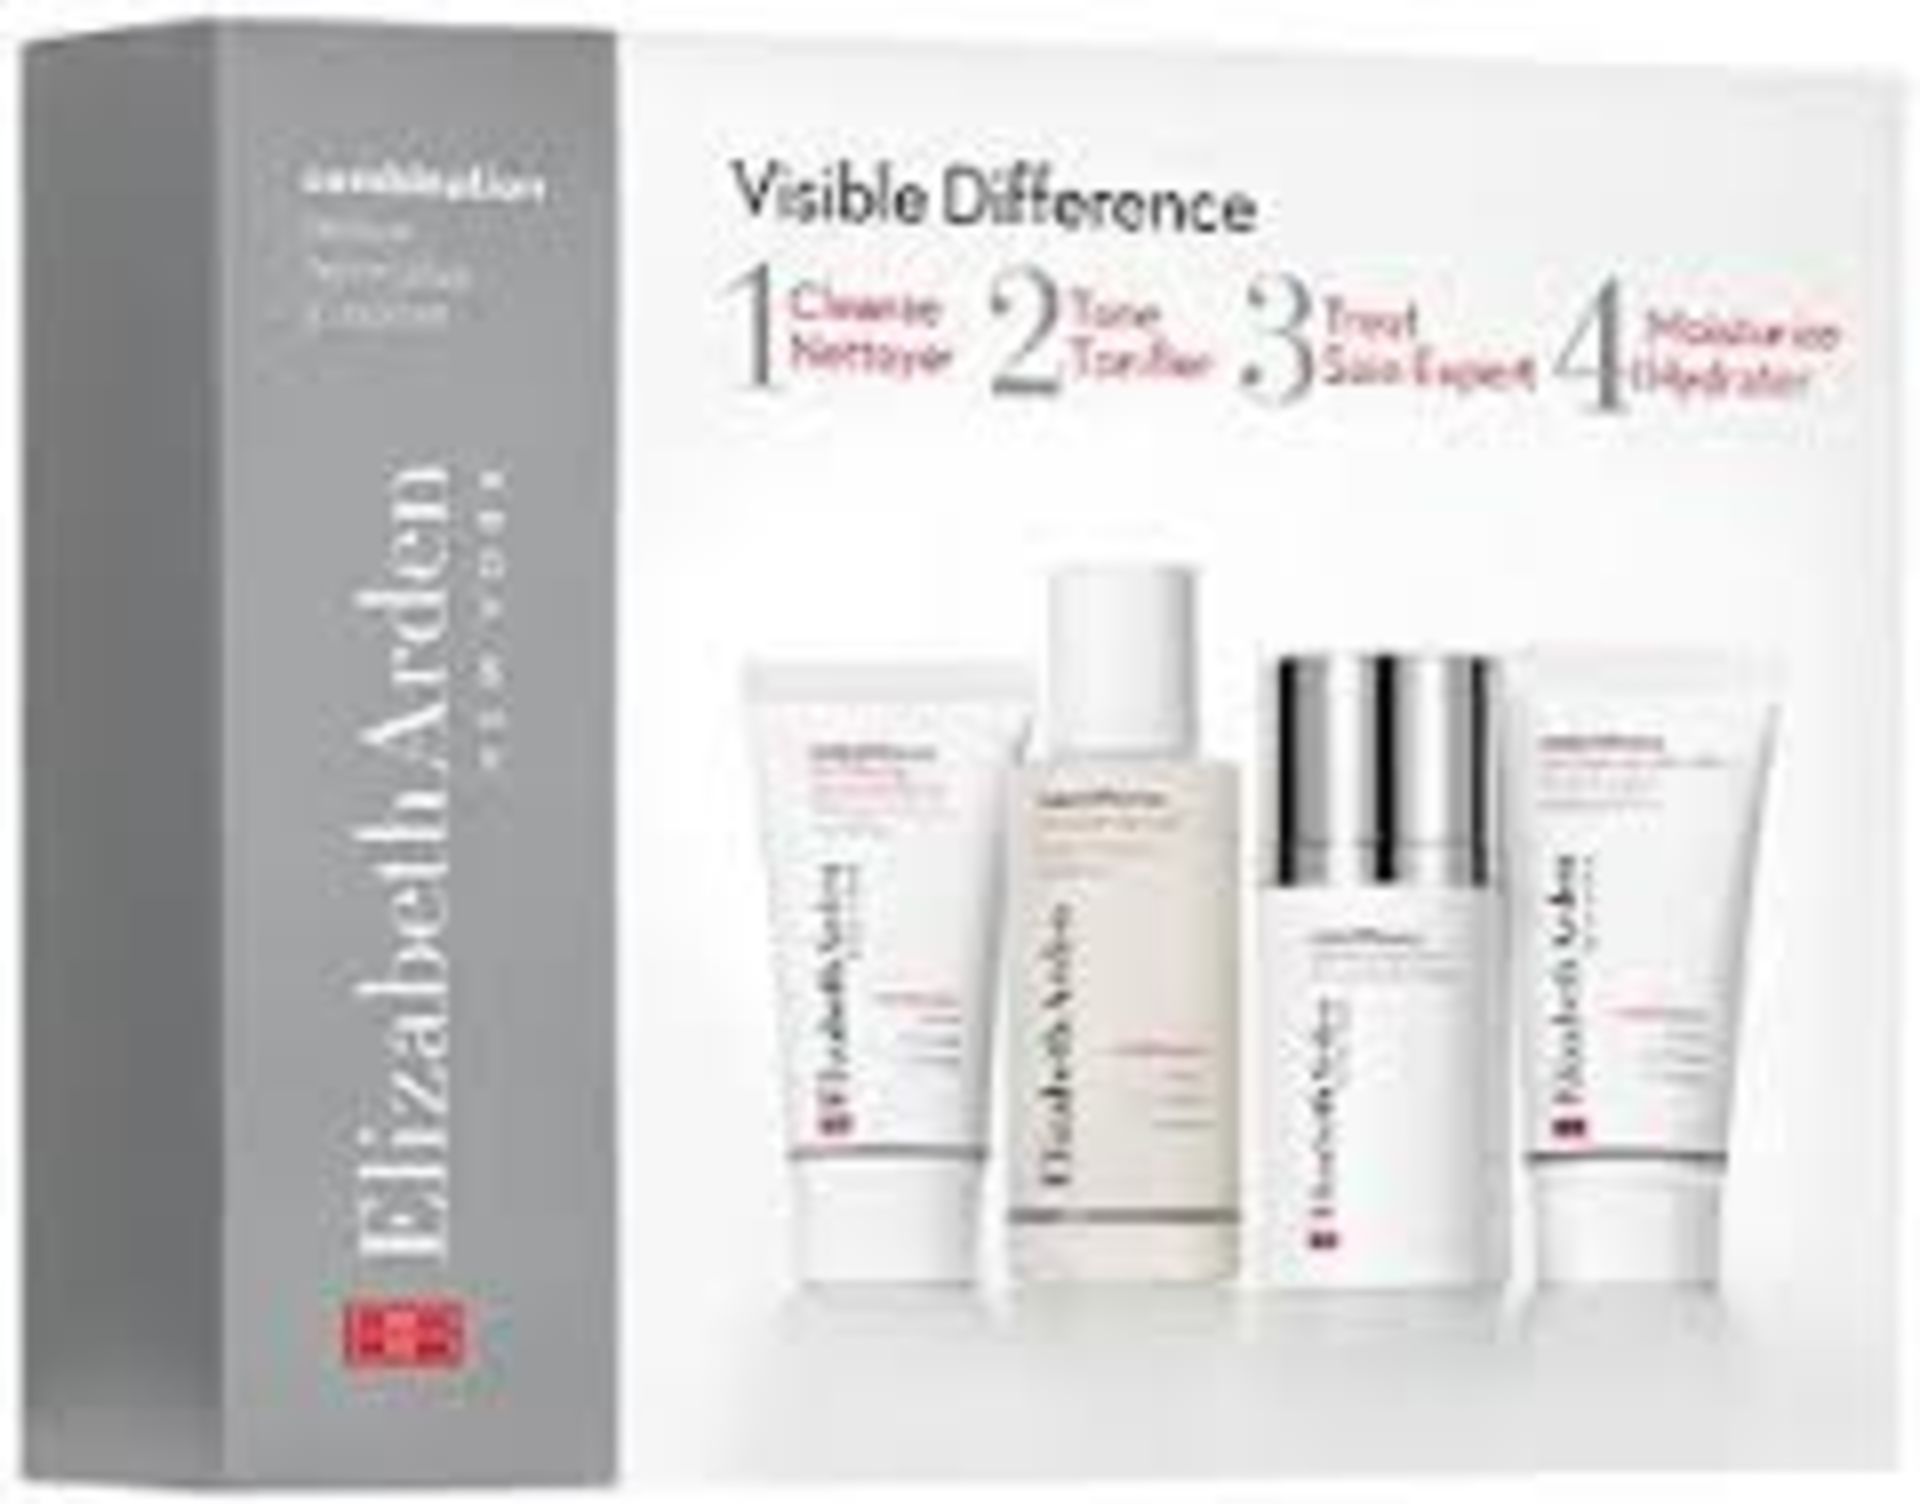 V Brand New Elizabeth Arden Visible Difference 4 Step Skin Care Set Includes Clenser, Toner, Skin